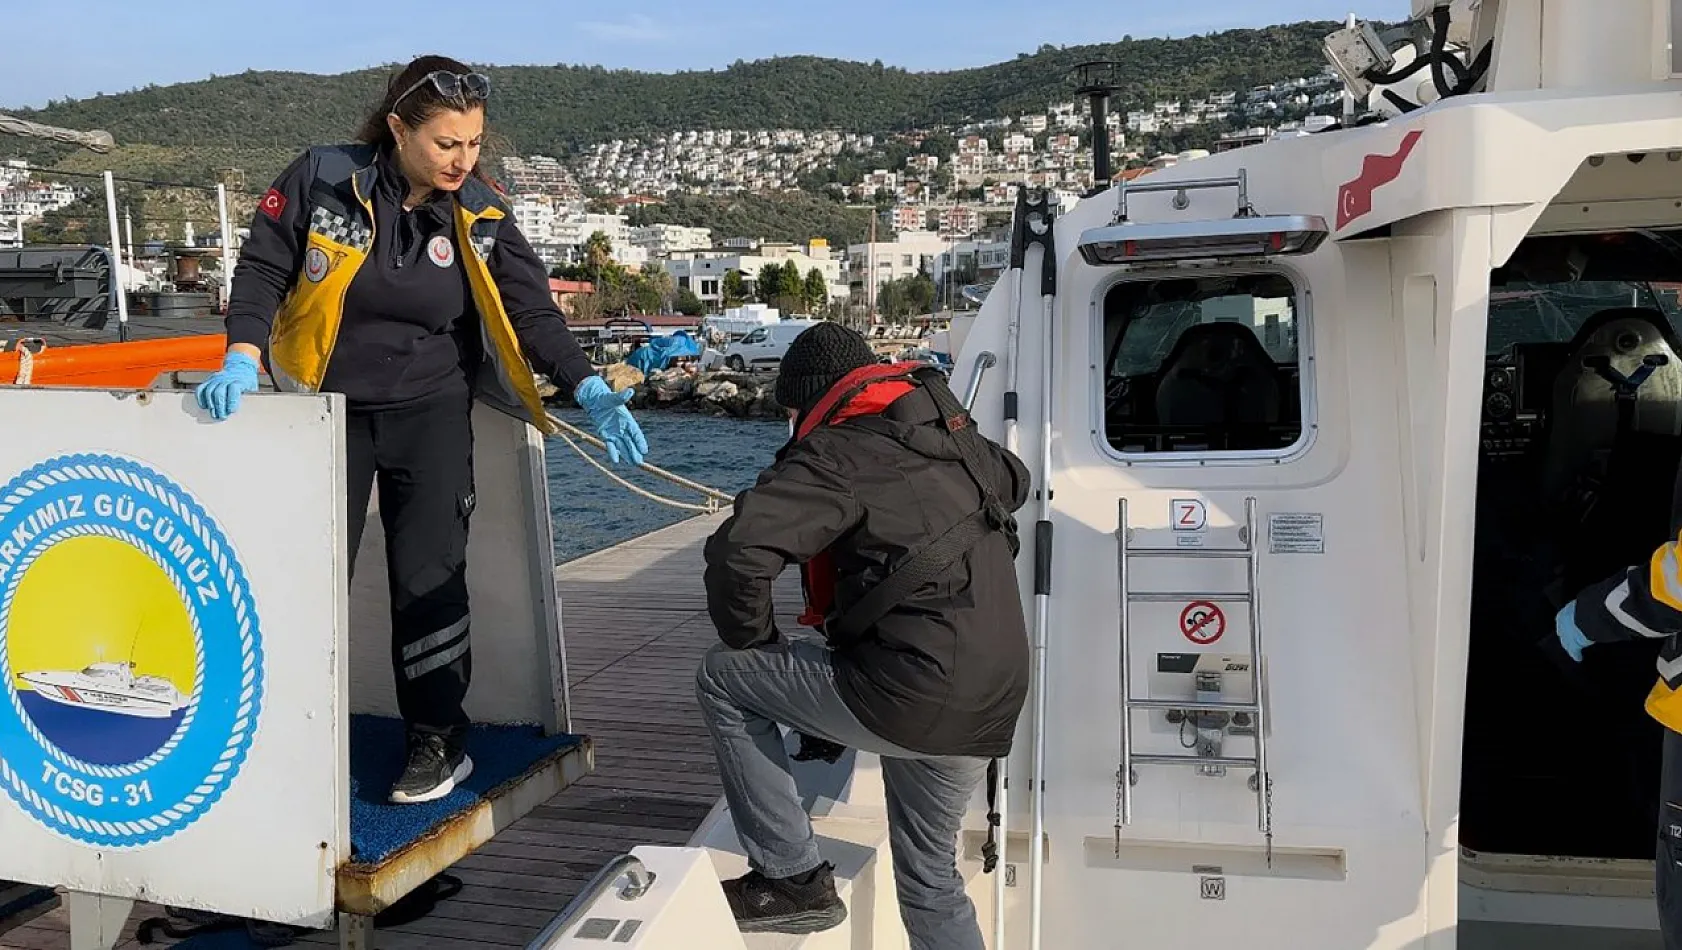 Gezi Teknesinde Rahatsızlanan Vatandaşa Tıbbi Tahliye